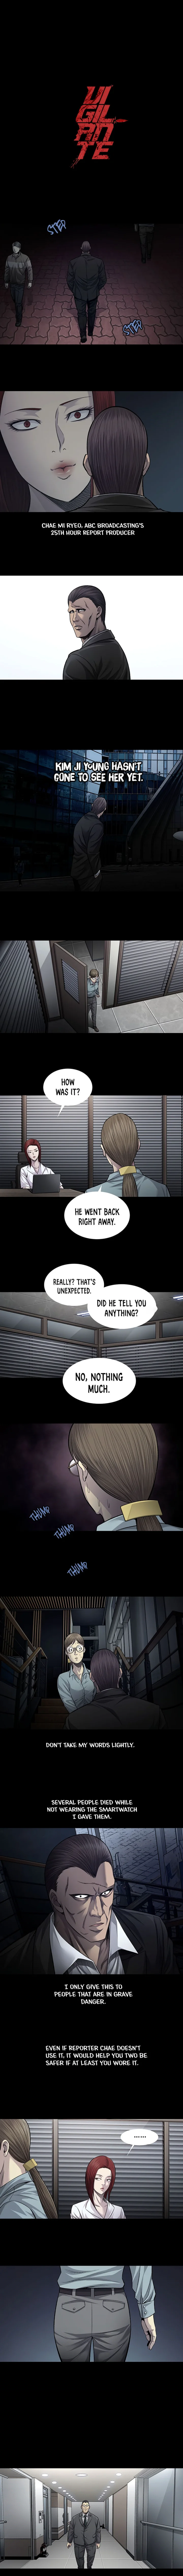 Vigilante - Chapter 68 Page 1